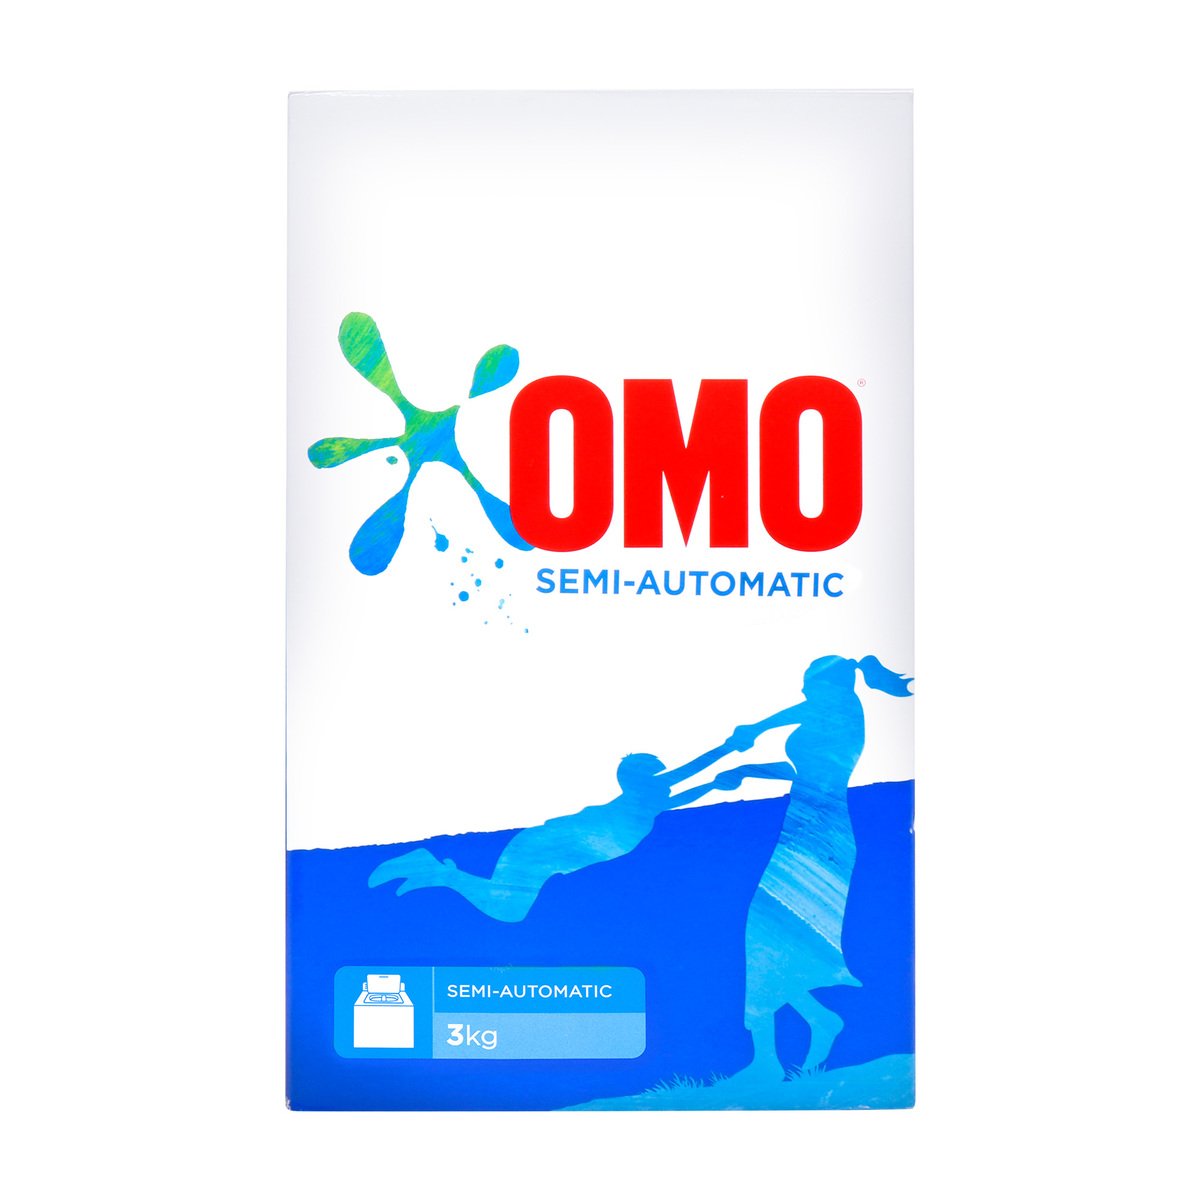 Omo Washing Powder Semi-Automatic 3kg